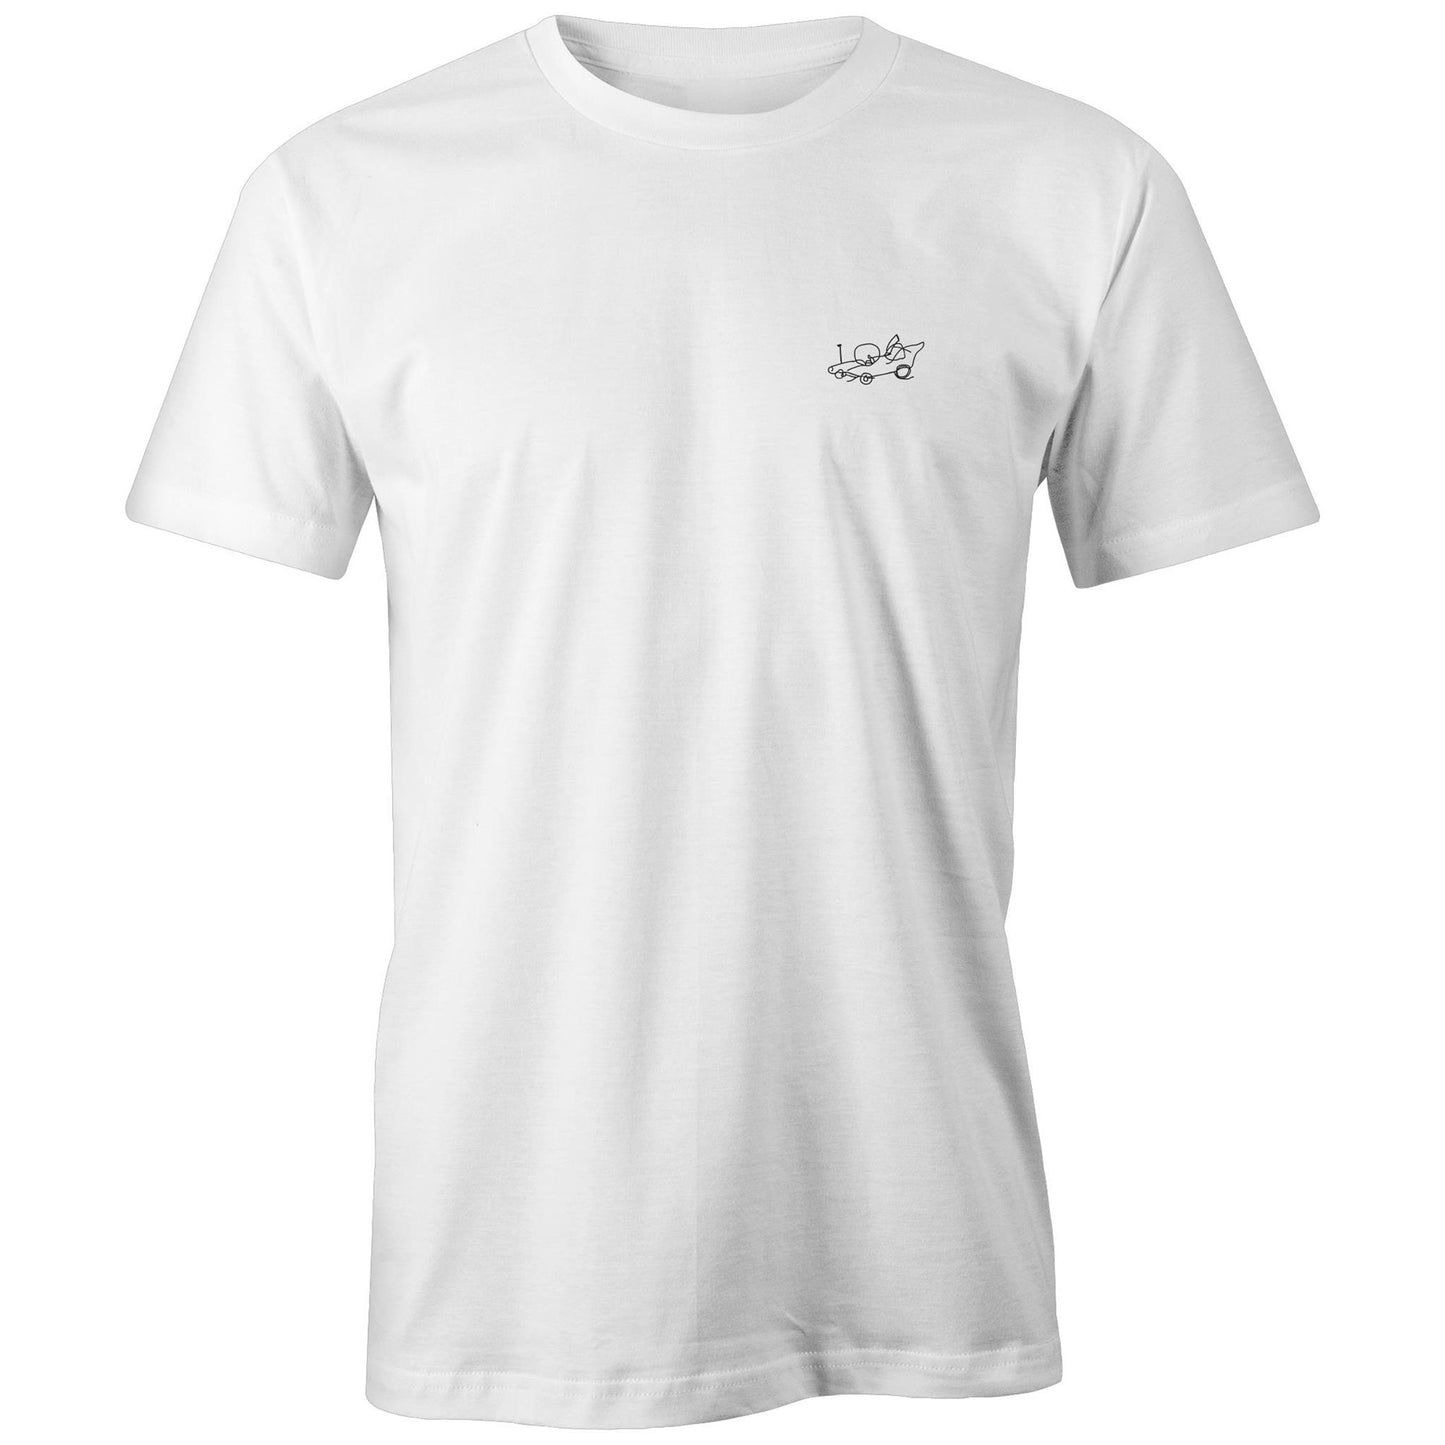 The Homer T-Shirt